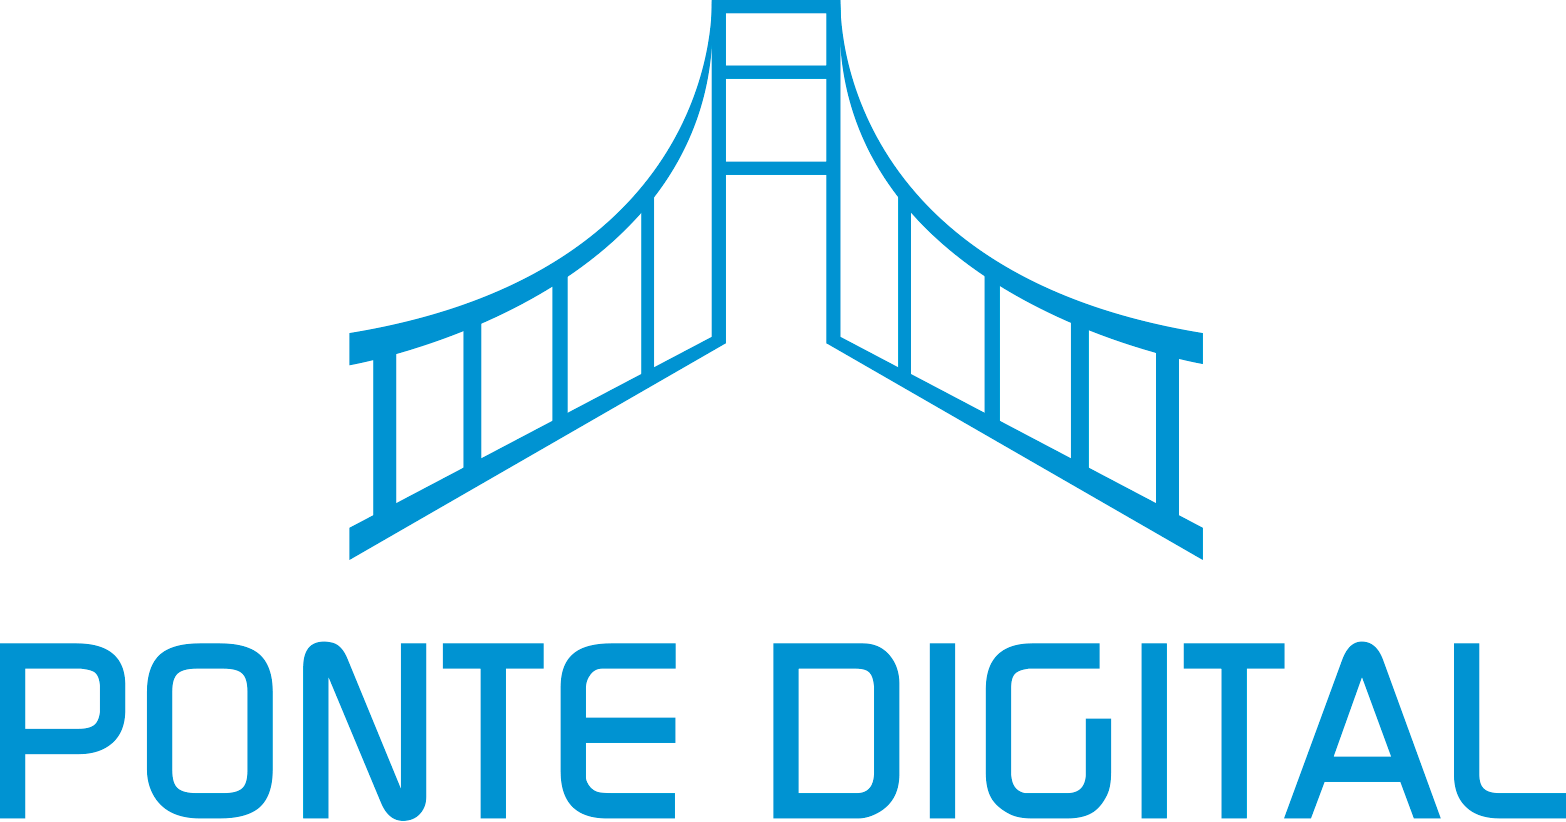 A Ponte Digital